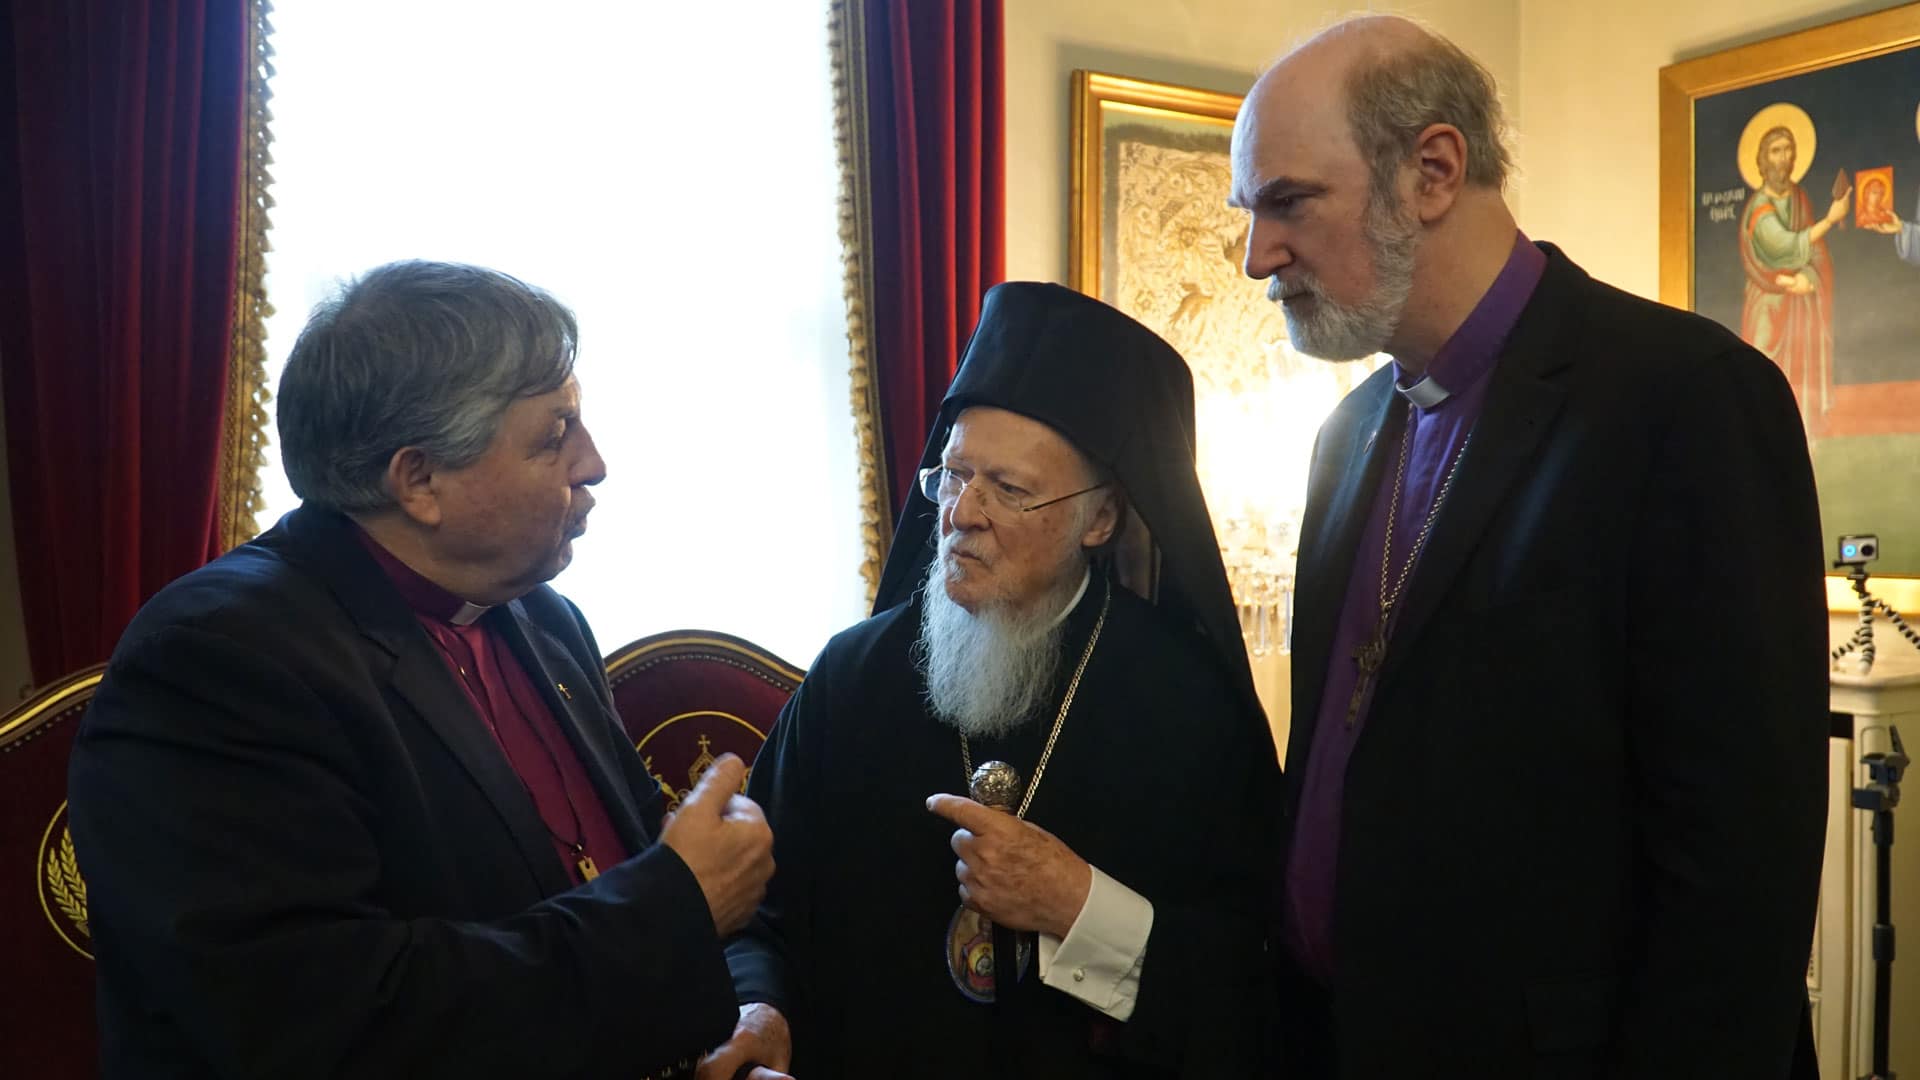 Nik Nedelchev und Thomas Schirrmacher von der Weltweiten Evangelischen Allianz im Gespräch mit Bartholomäus I., Patriarch von Konstantiopel